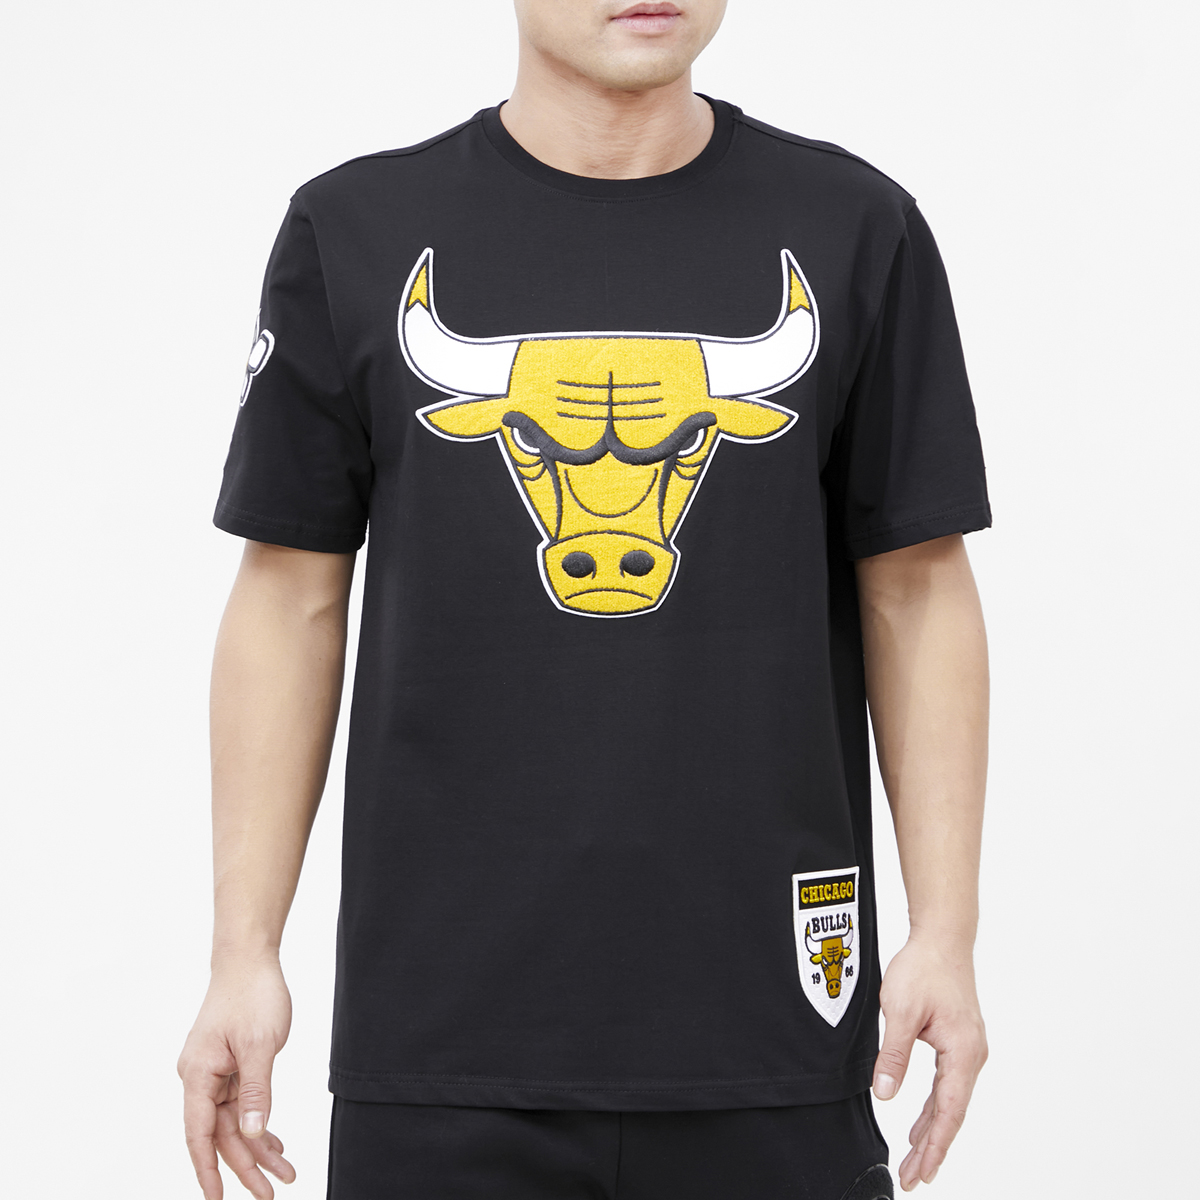 Air-Jordan-4-Thunder-Bulls-Shirt